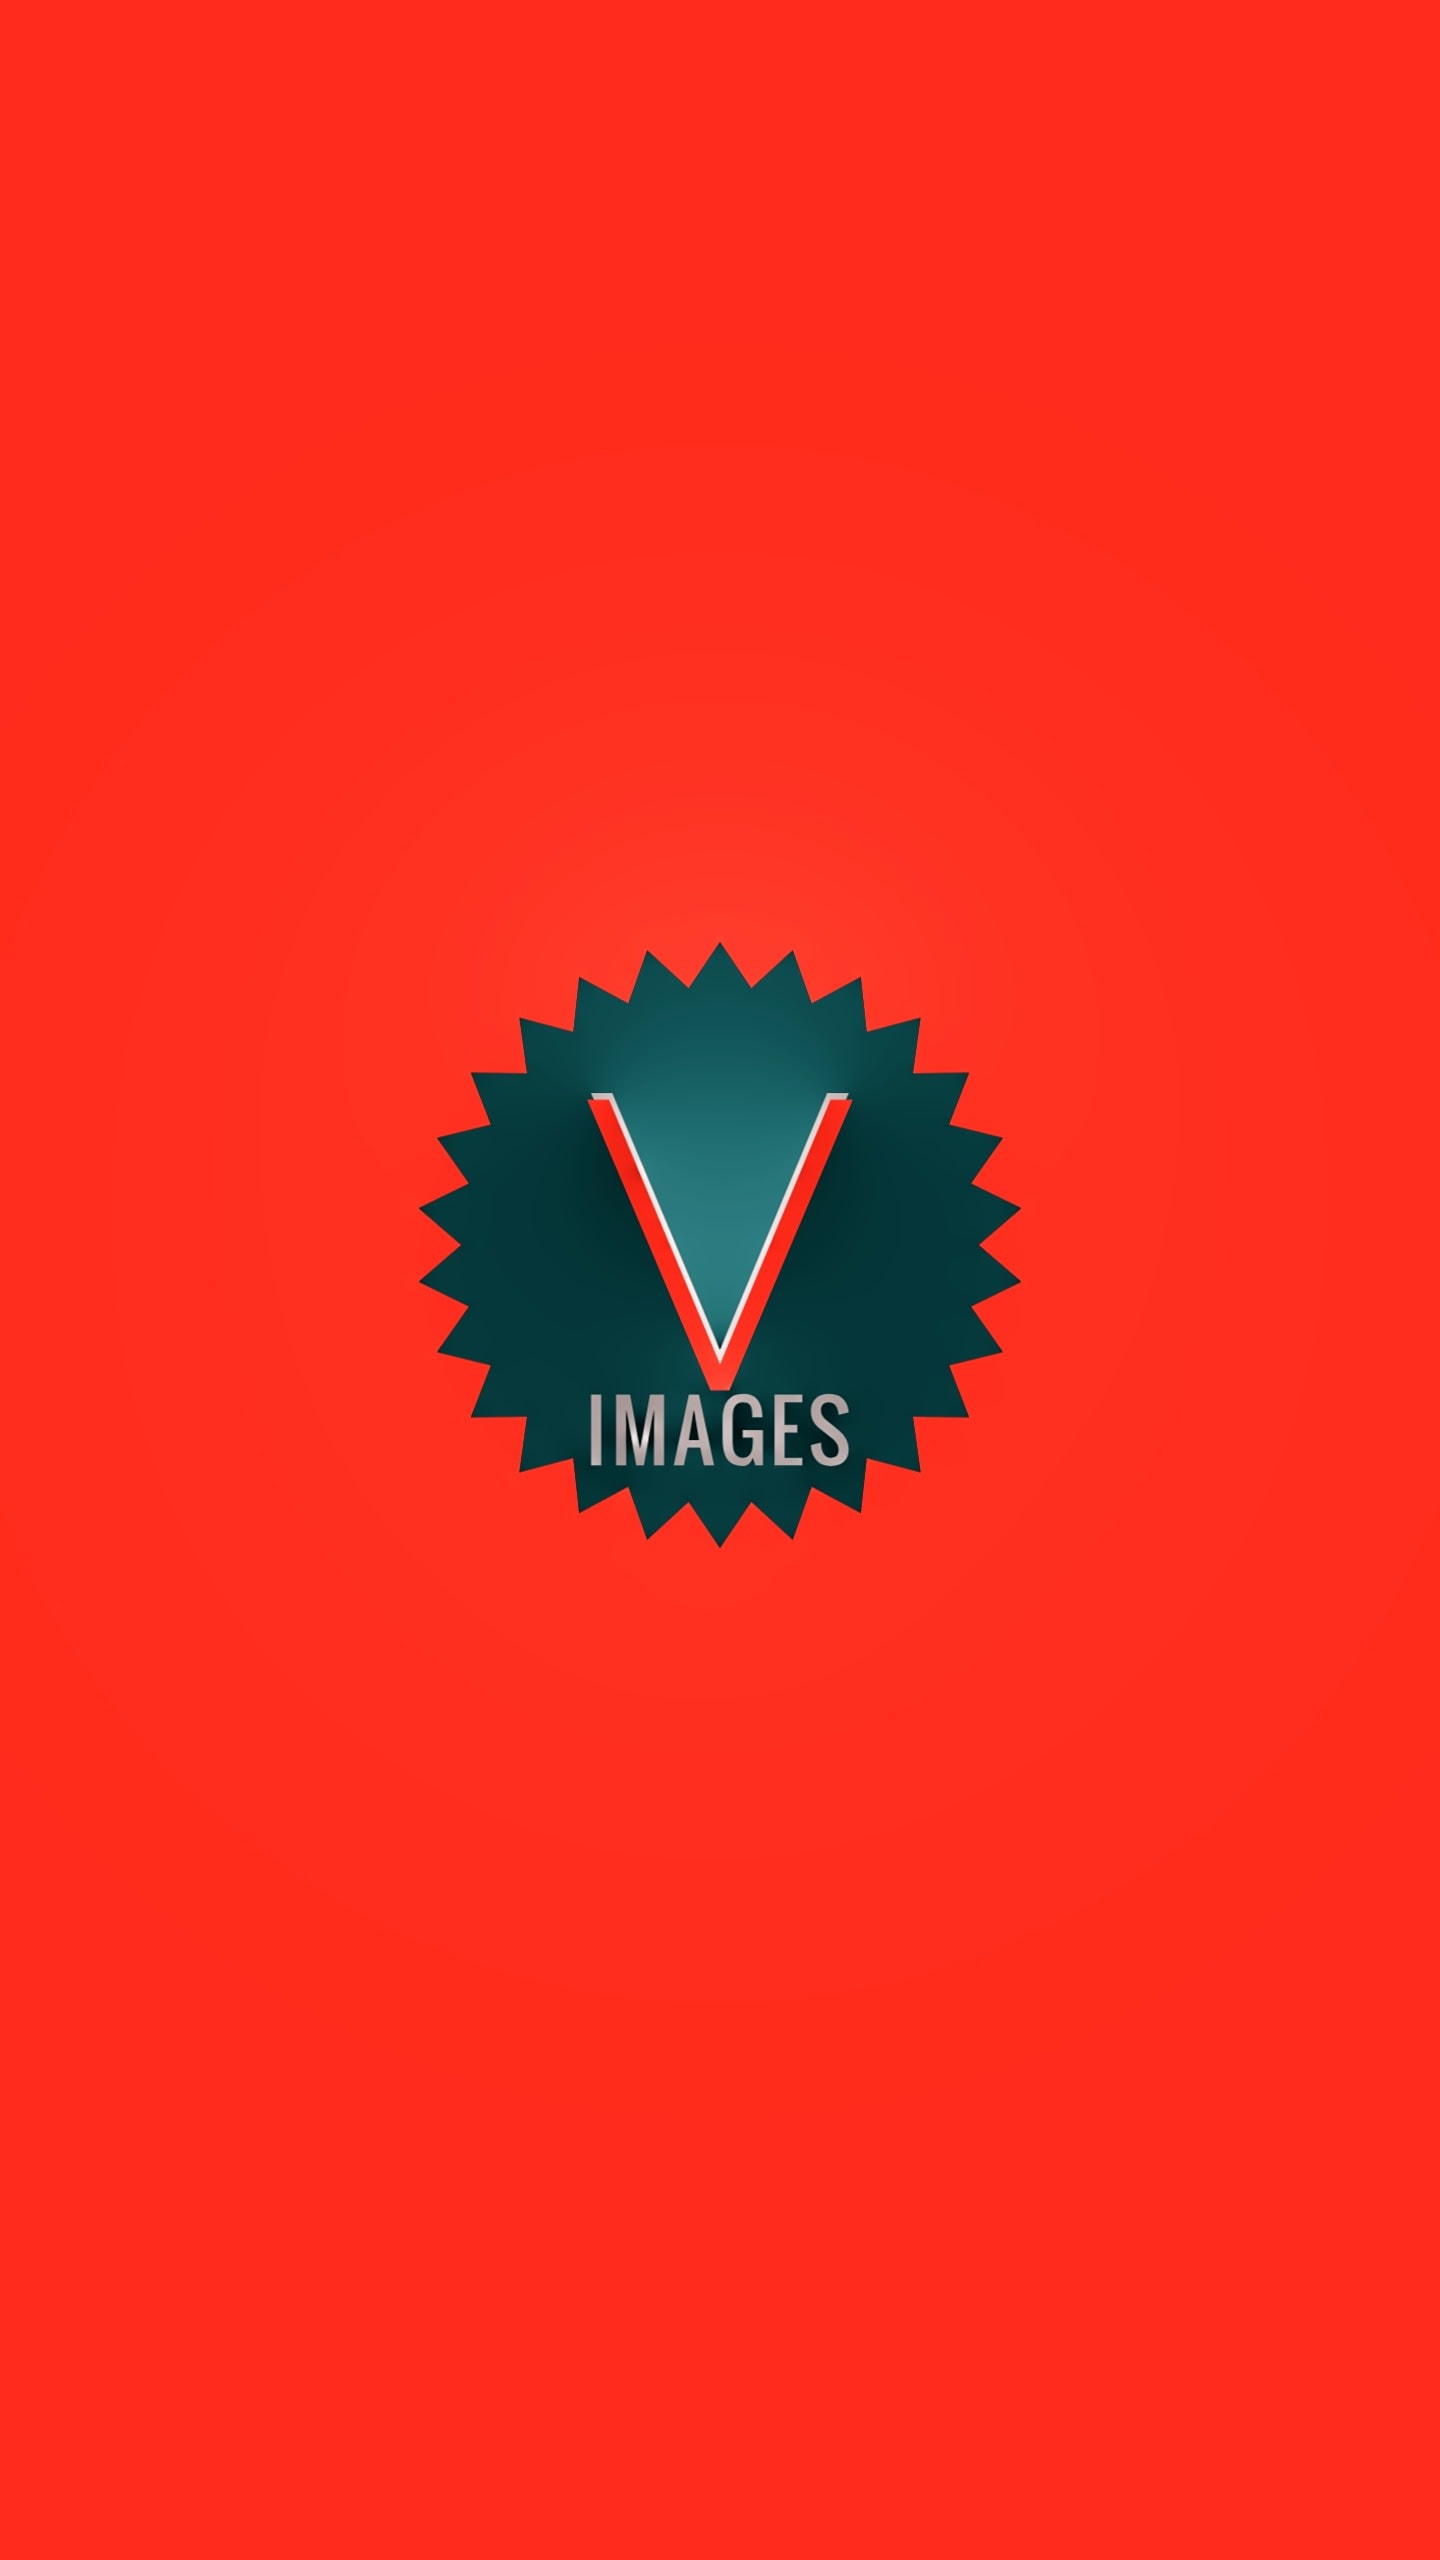 V_IMAGES